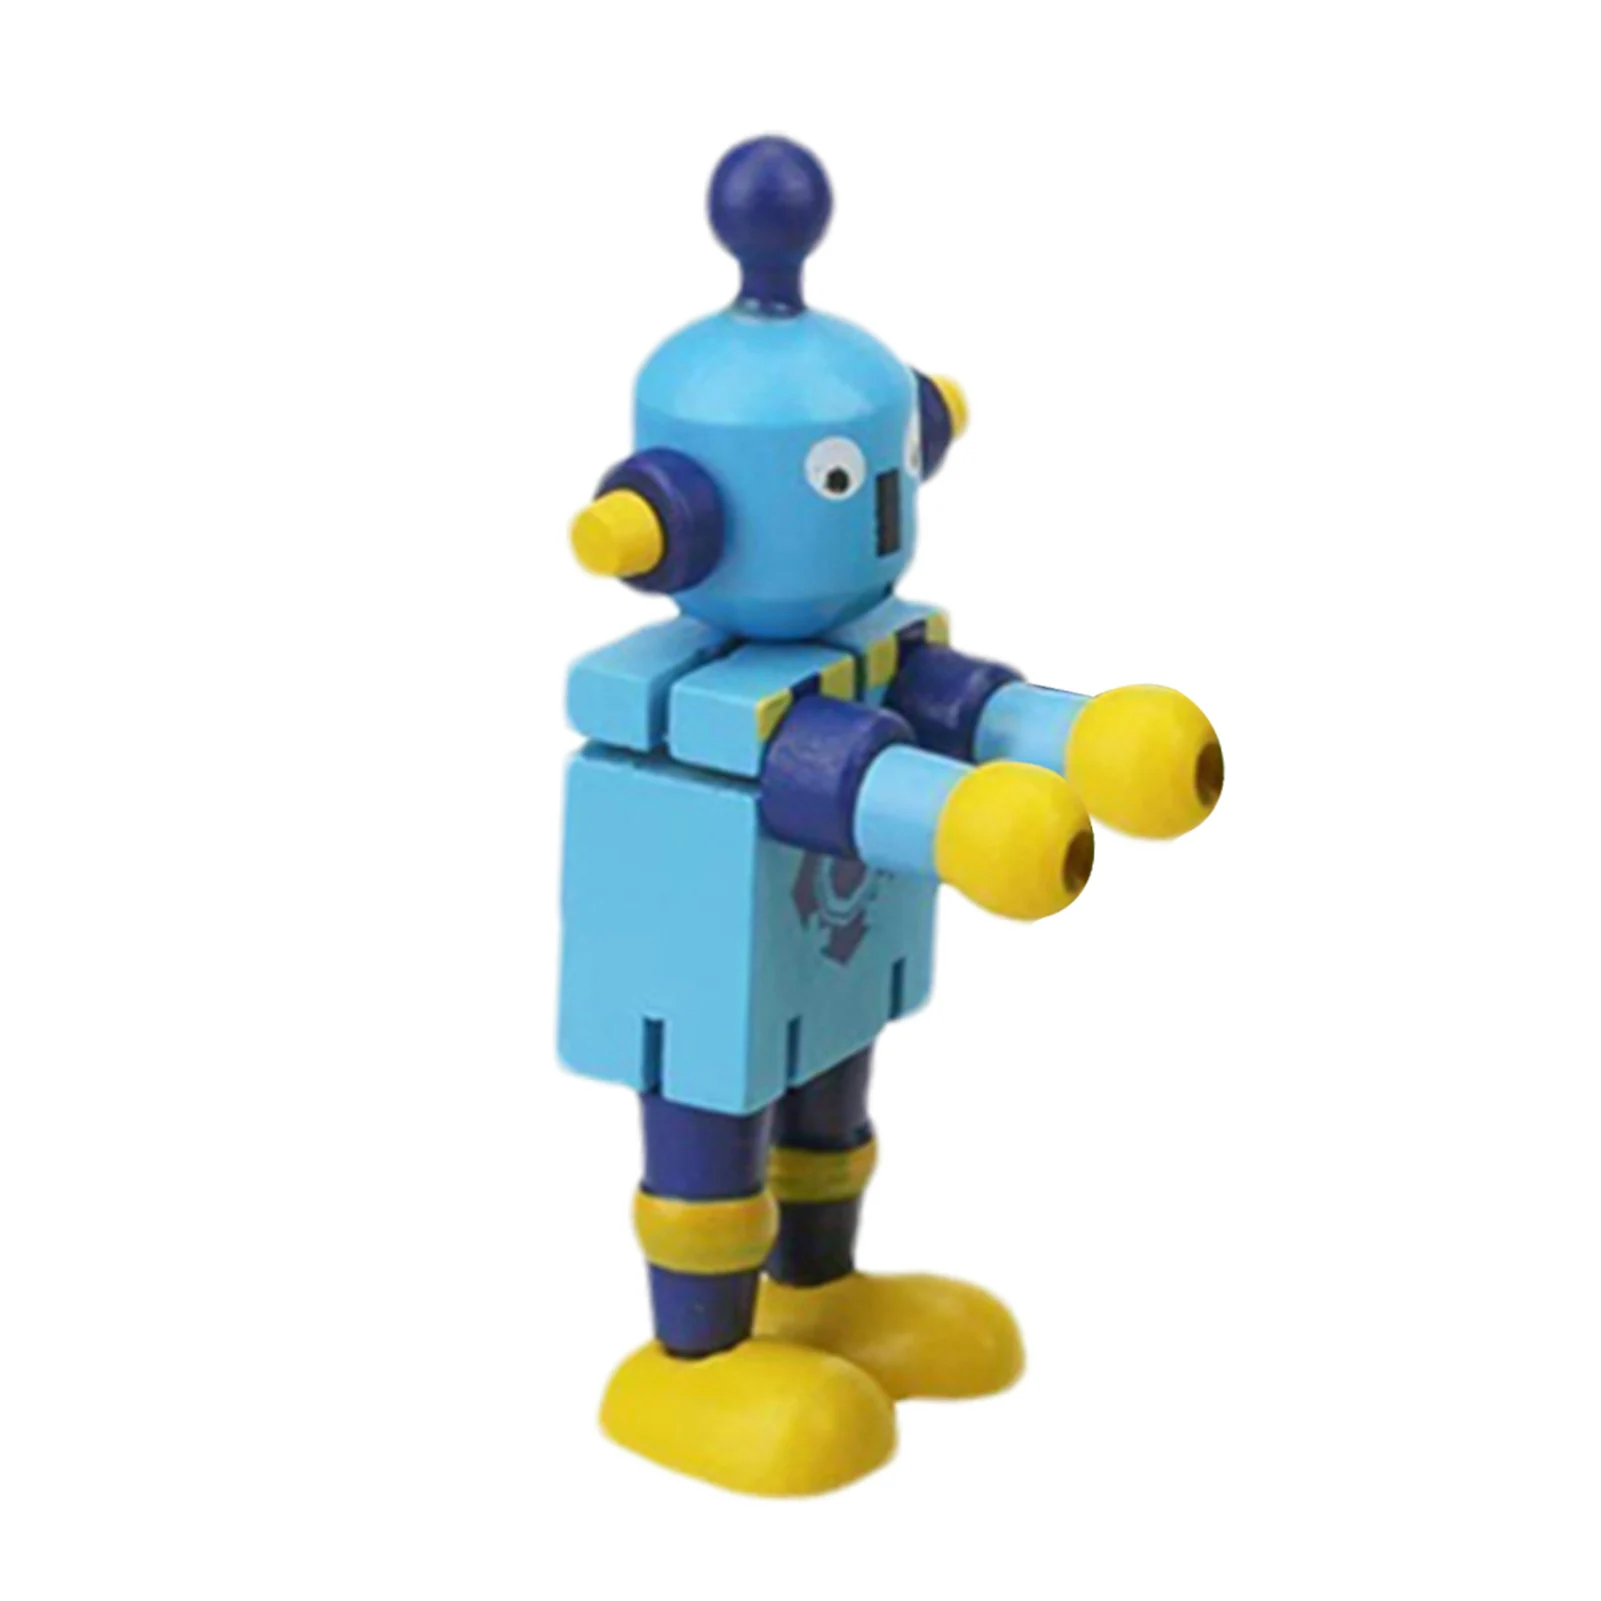 

Деревянная Гибкая кукла-робот, игрушки для путешествий, деревянная кукла-робот, деревянная игрушка-робот для строительства, кукла для детей...